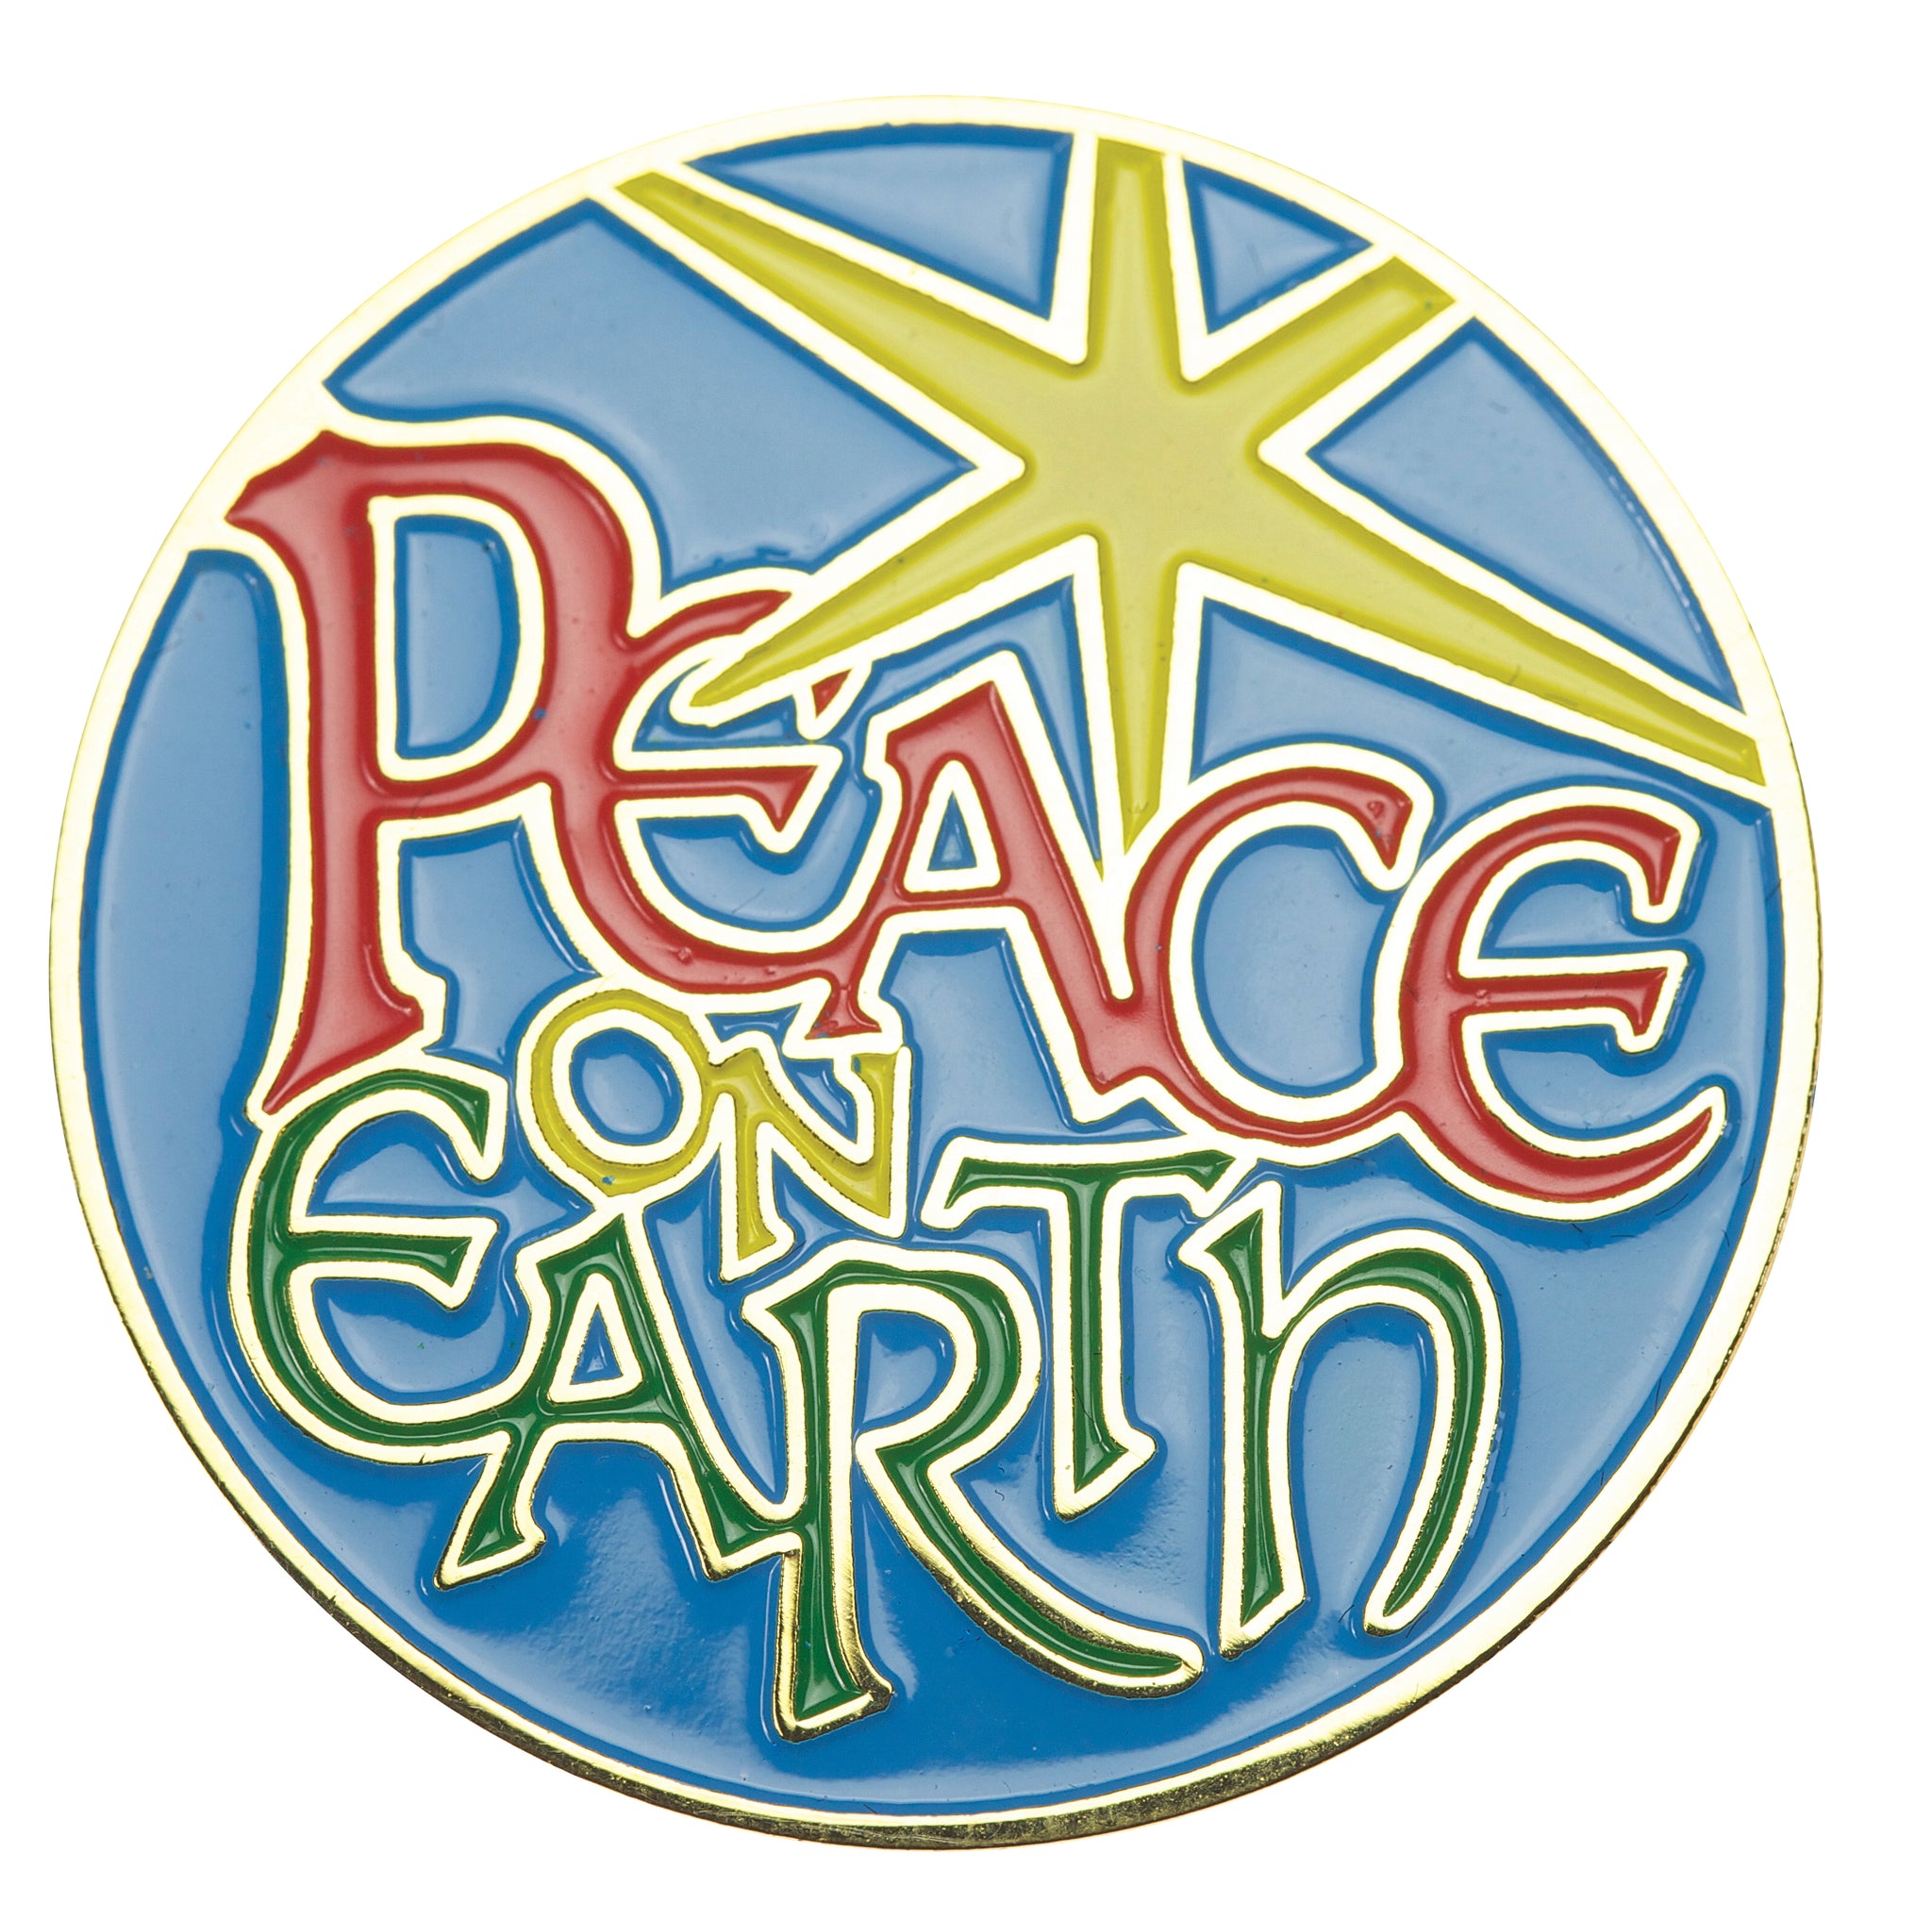 Peace On Earth Lapel Pin (B-61)Peace On Earth Lapel Pin (B-61)